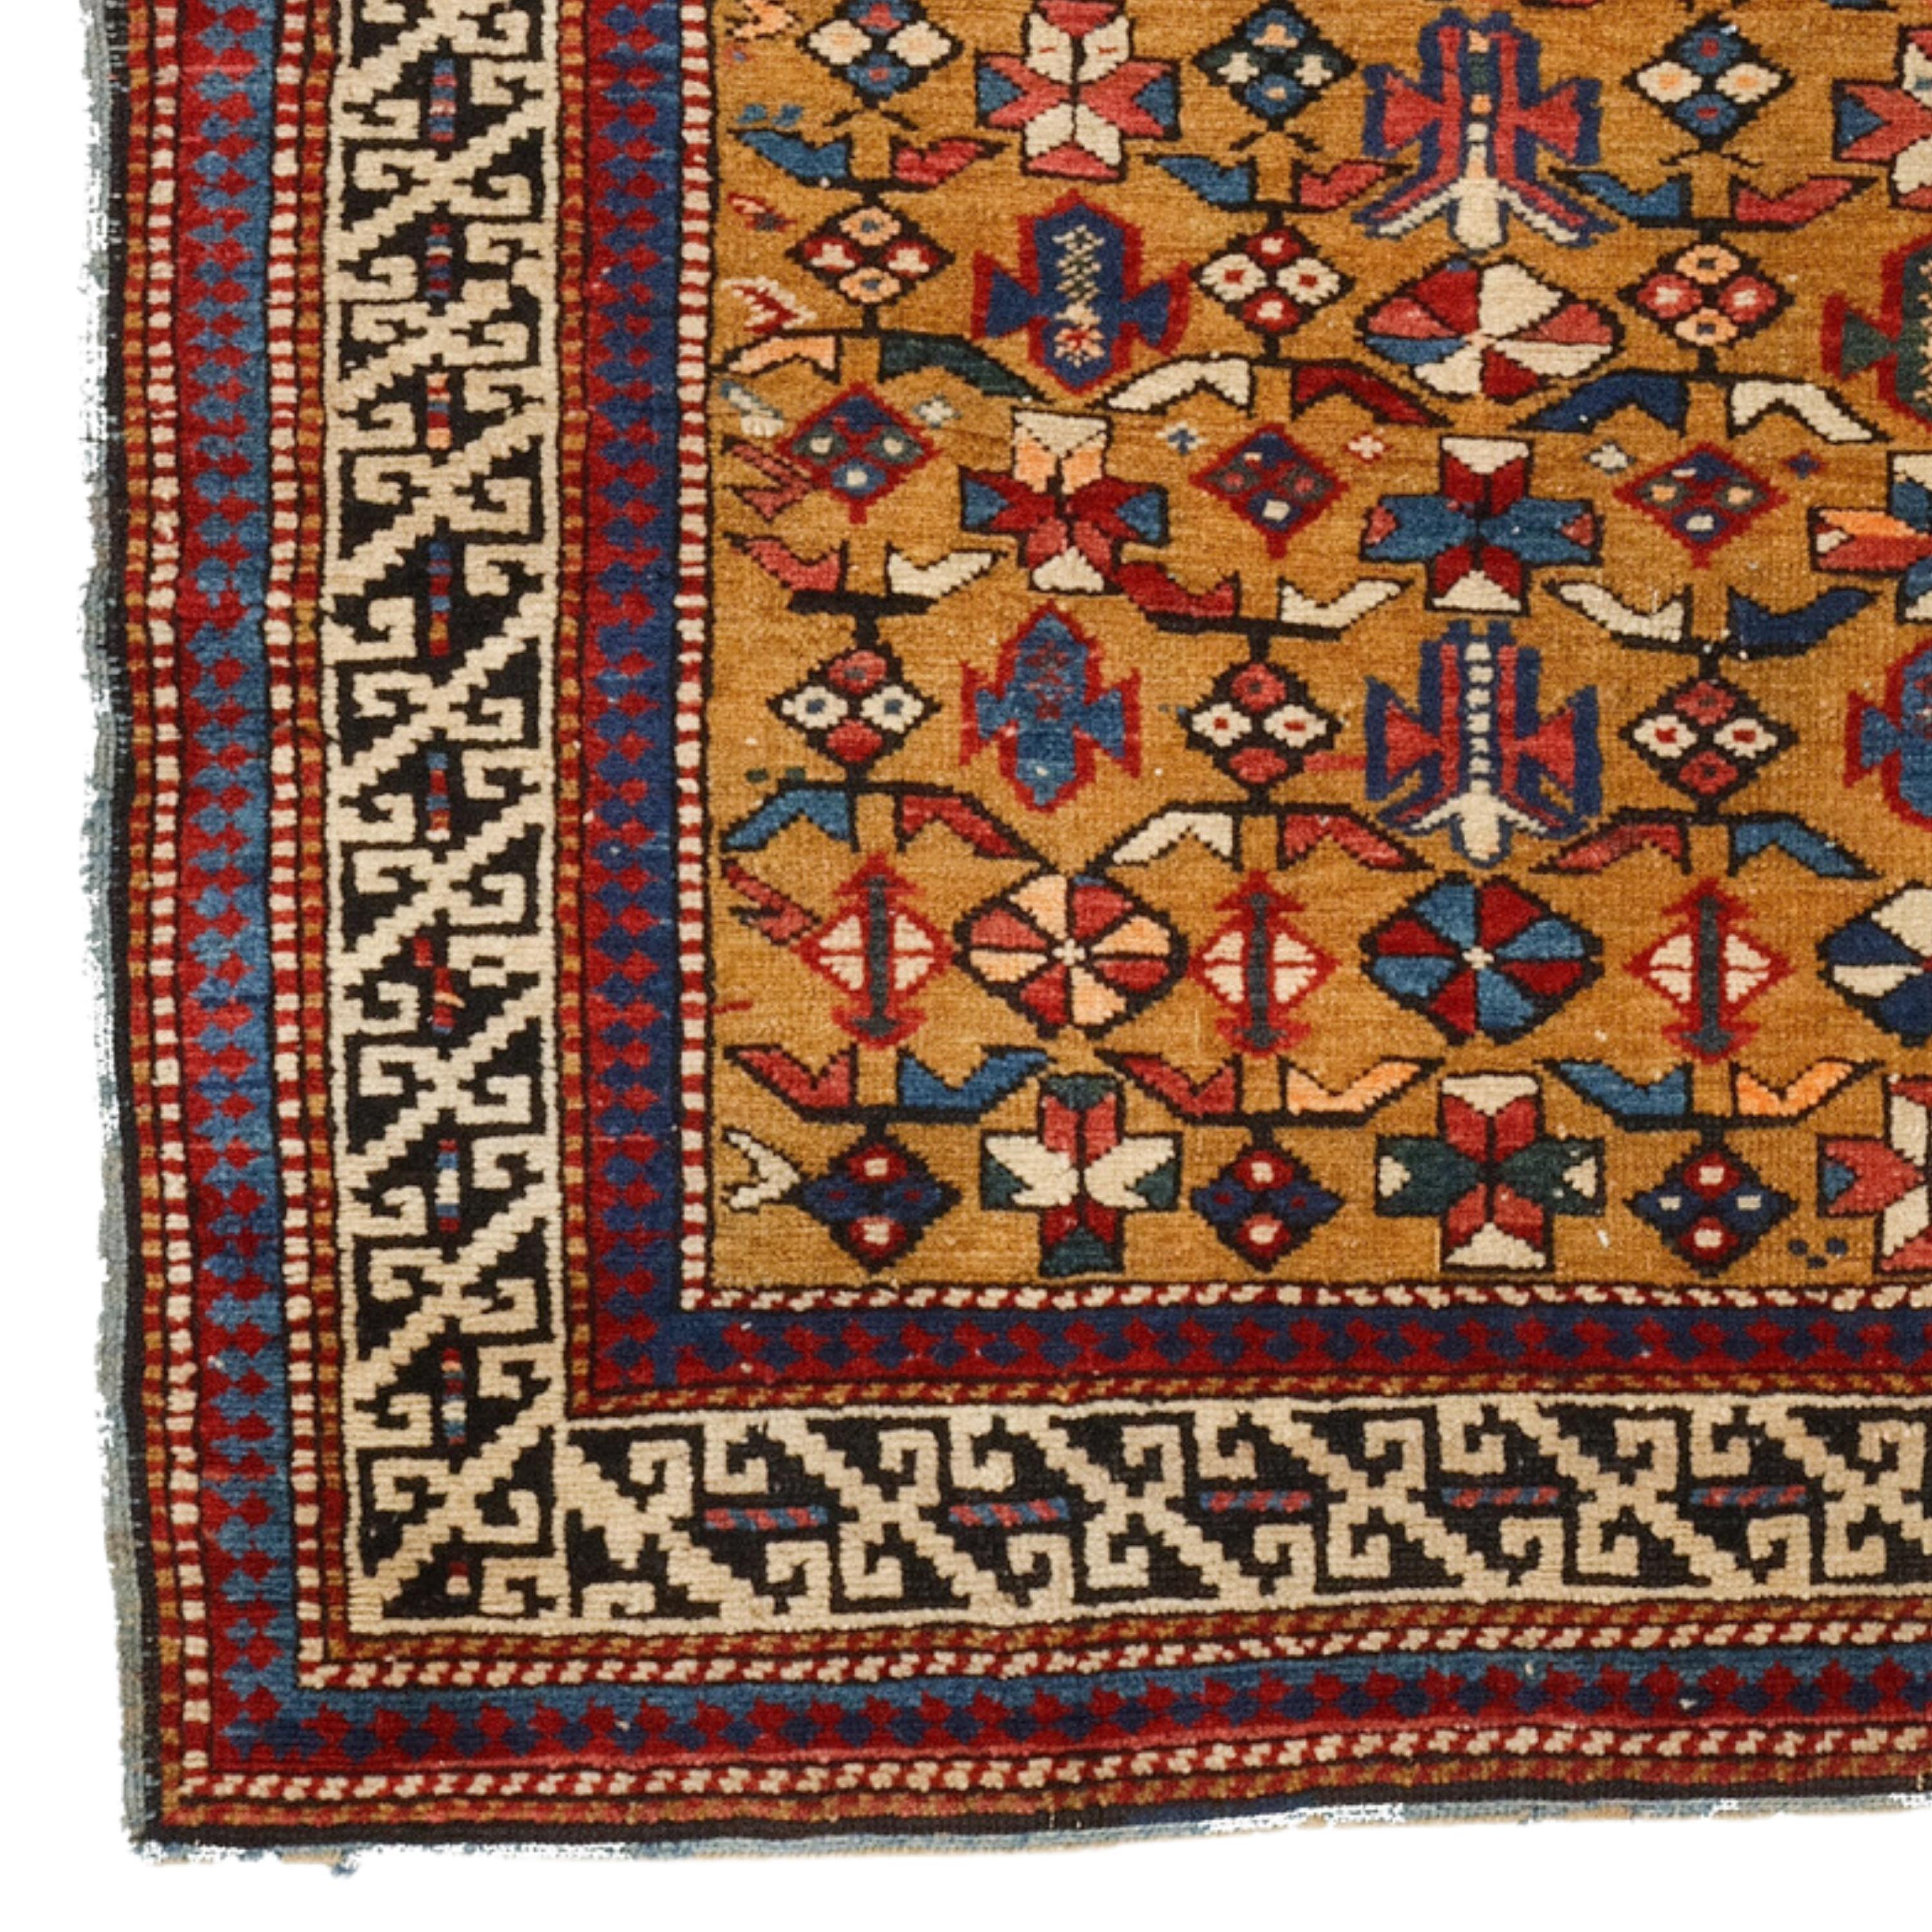 Antiker Kuba-Schirwan-Teppich
Kuba-Schirwan-Teppich aus dem späten 19. Jahrhundert in gutem Zustand
Größe 115 x 165 cm (45,2x64,9 In)

Der Schirwan-Teppich ist ein handgefertigter Bodenbelag aus der Region Schirwan in Aserbaidschan im